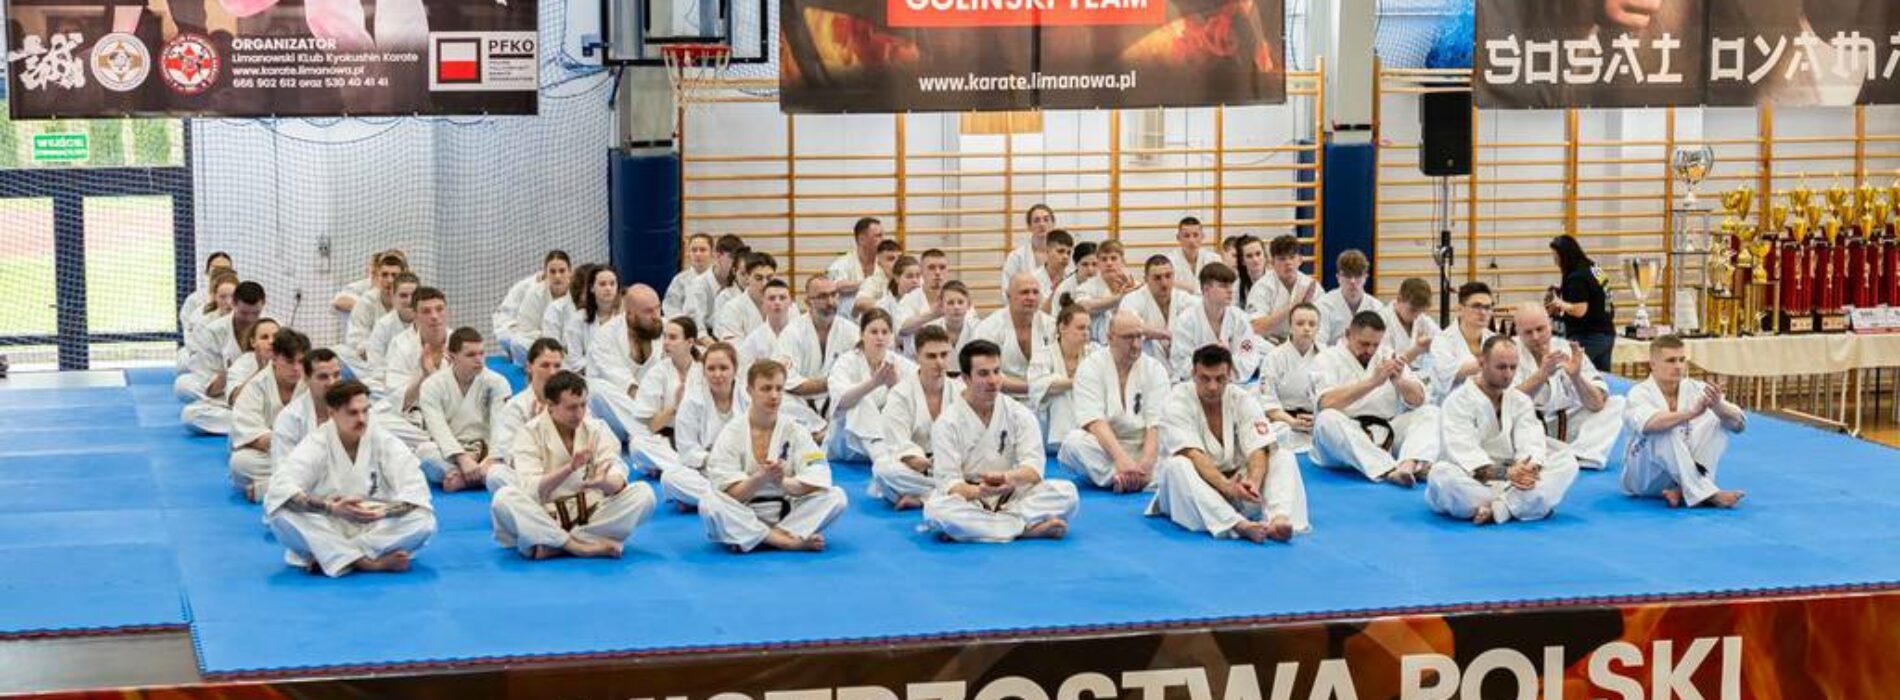 Mistrzostwa Polski Polskiego Związku Karate Kontaktowego